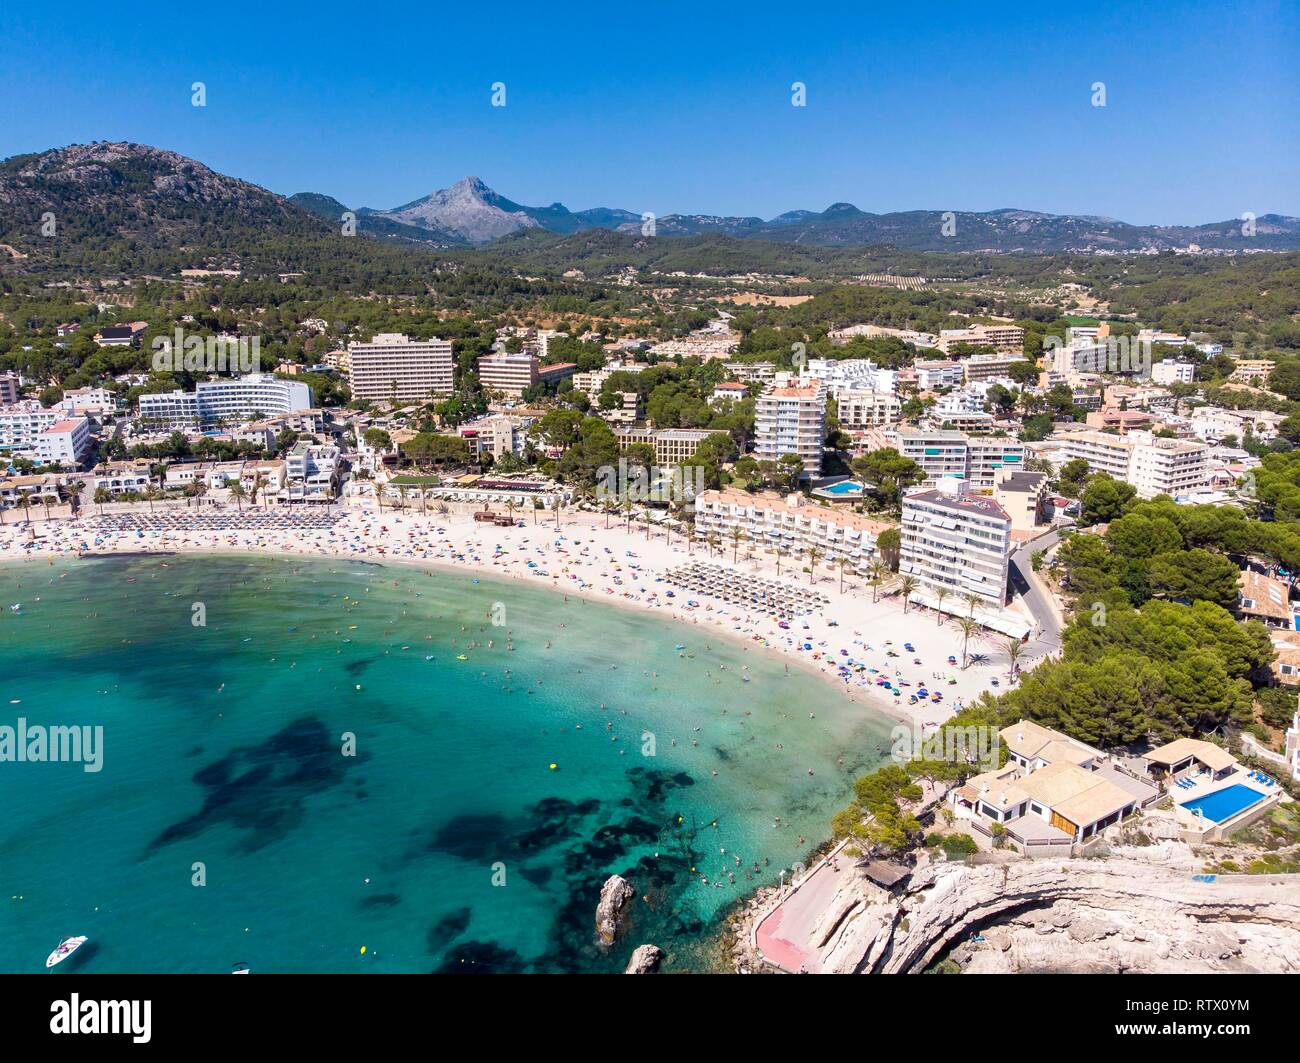 Vista aérea, vista de Peguera, con hoteles y playa, Costa de la Calma, región Caliva, Mallorca, Islas Baleares, España Foto de stock